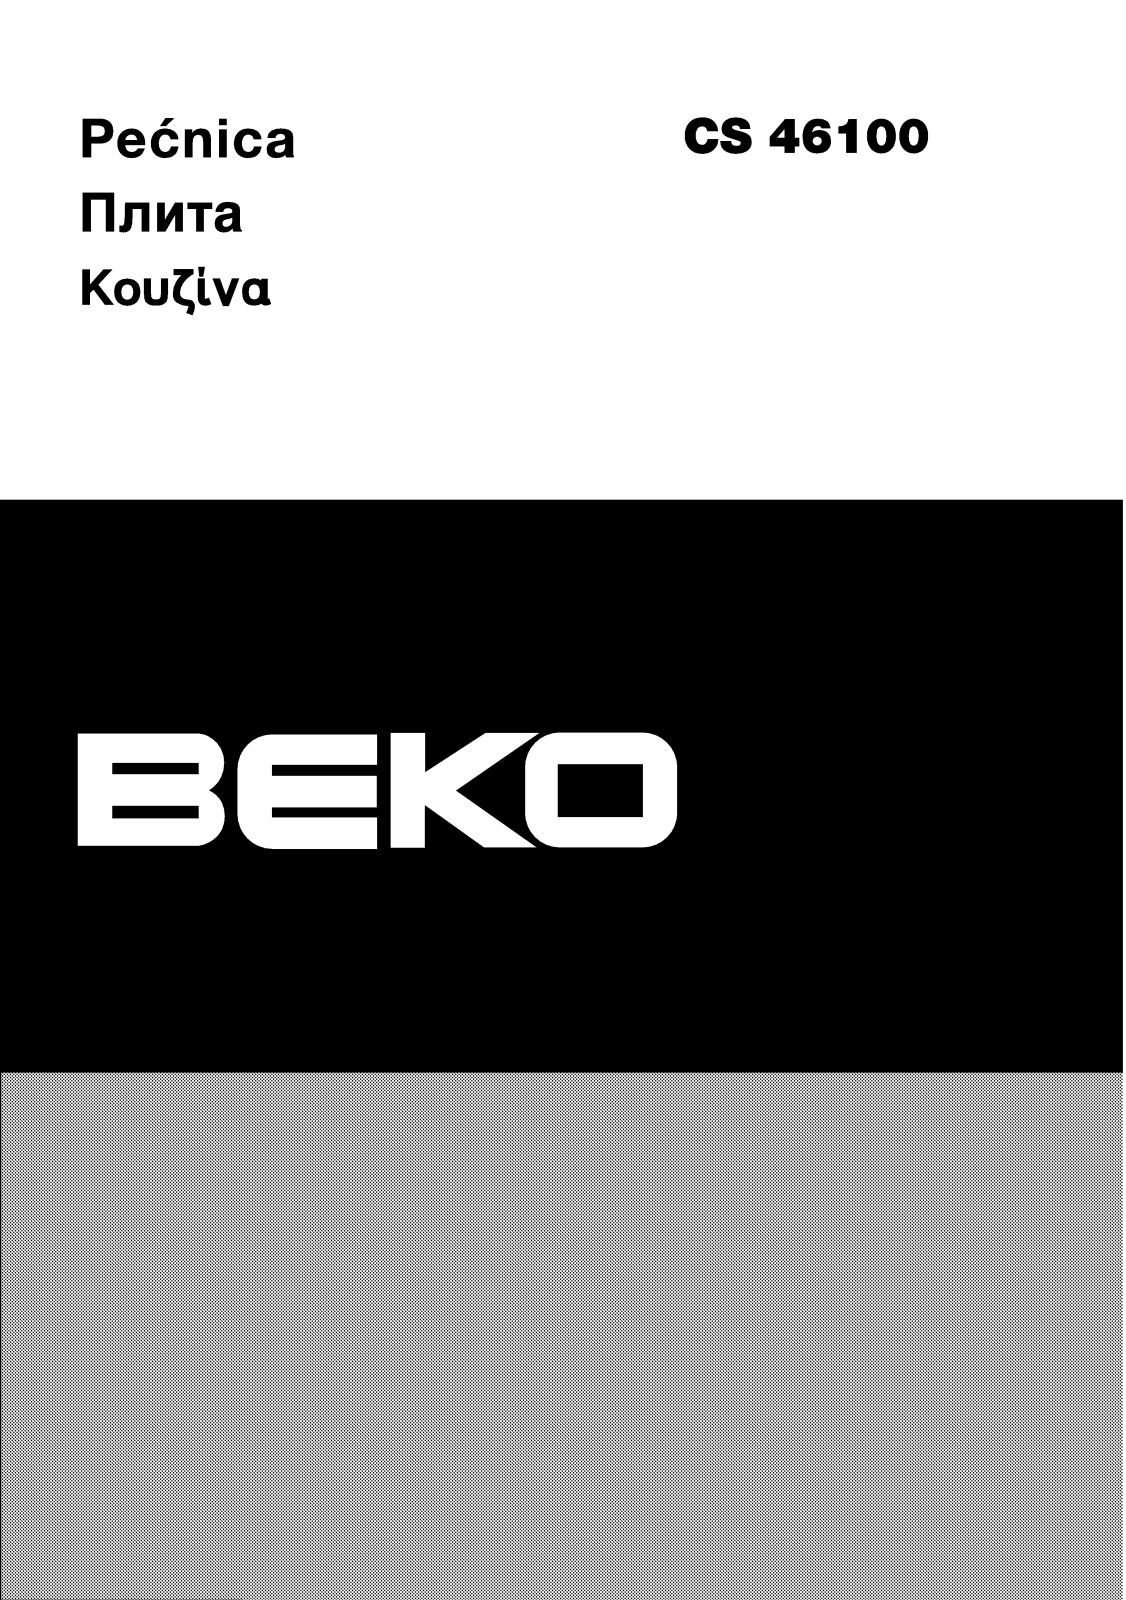 Beko CS 46100 User Manual